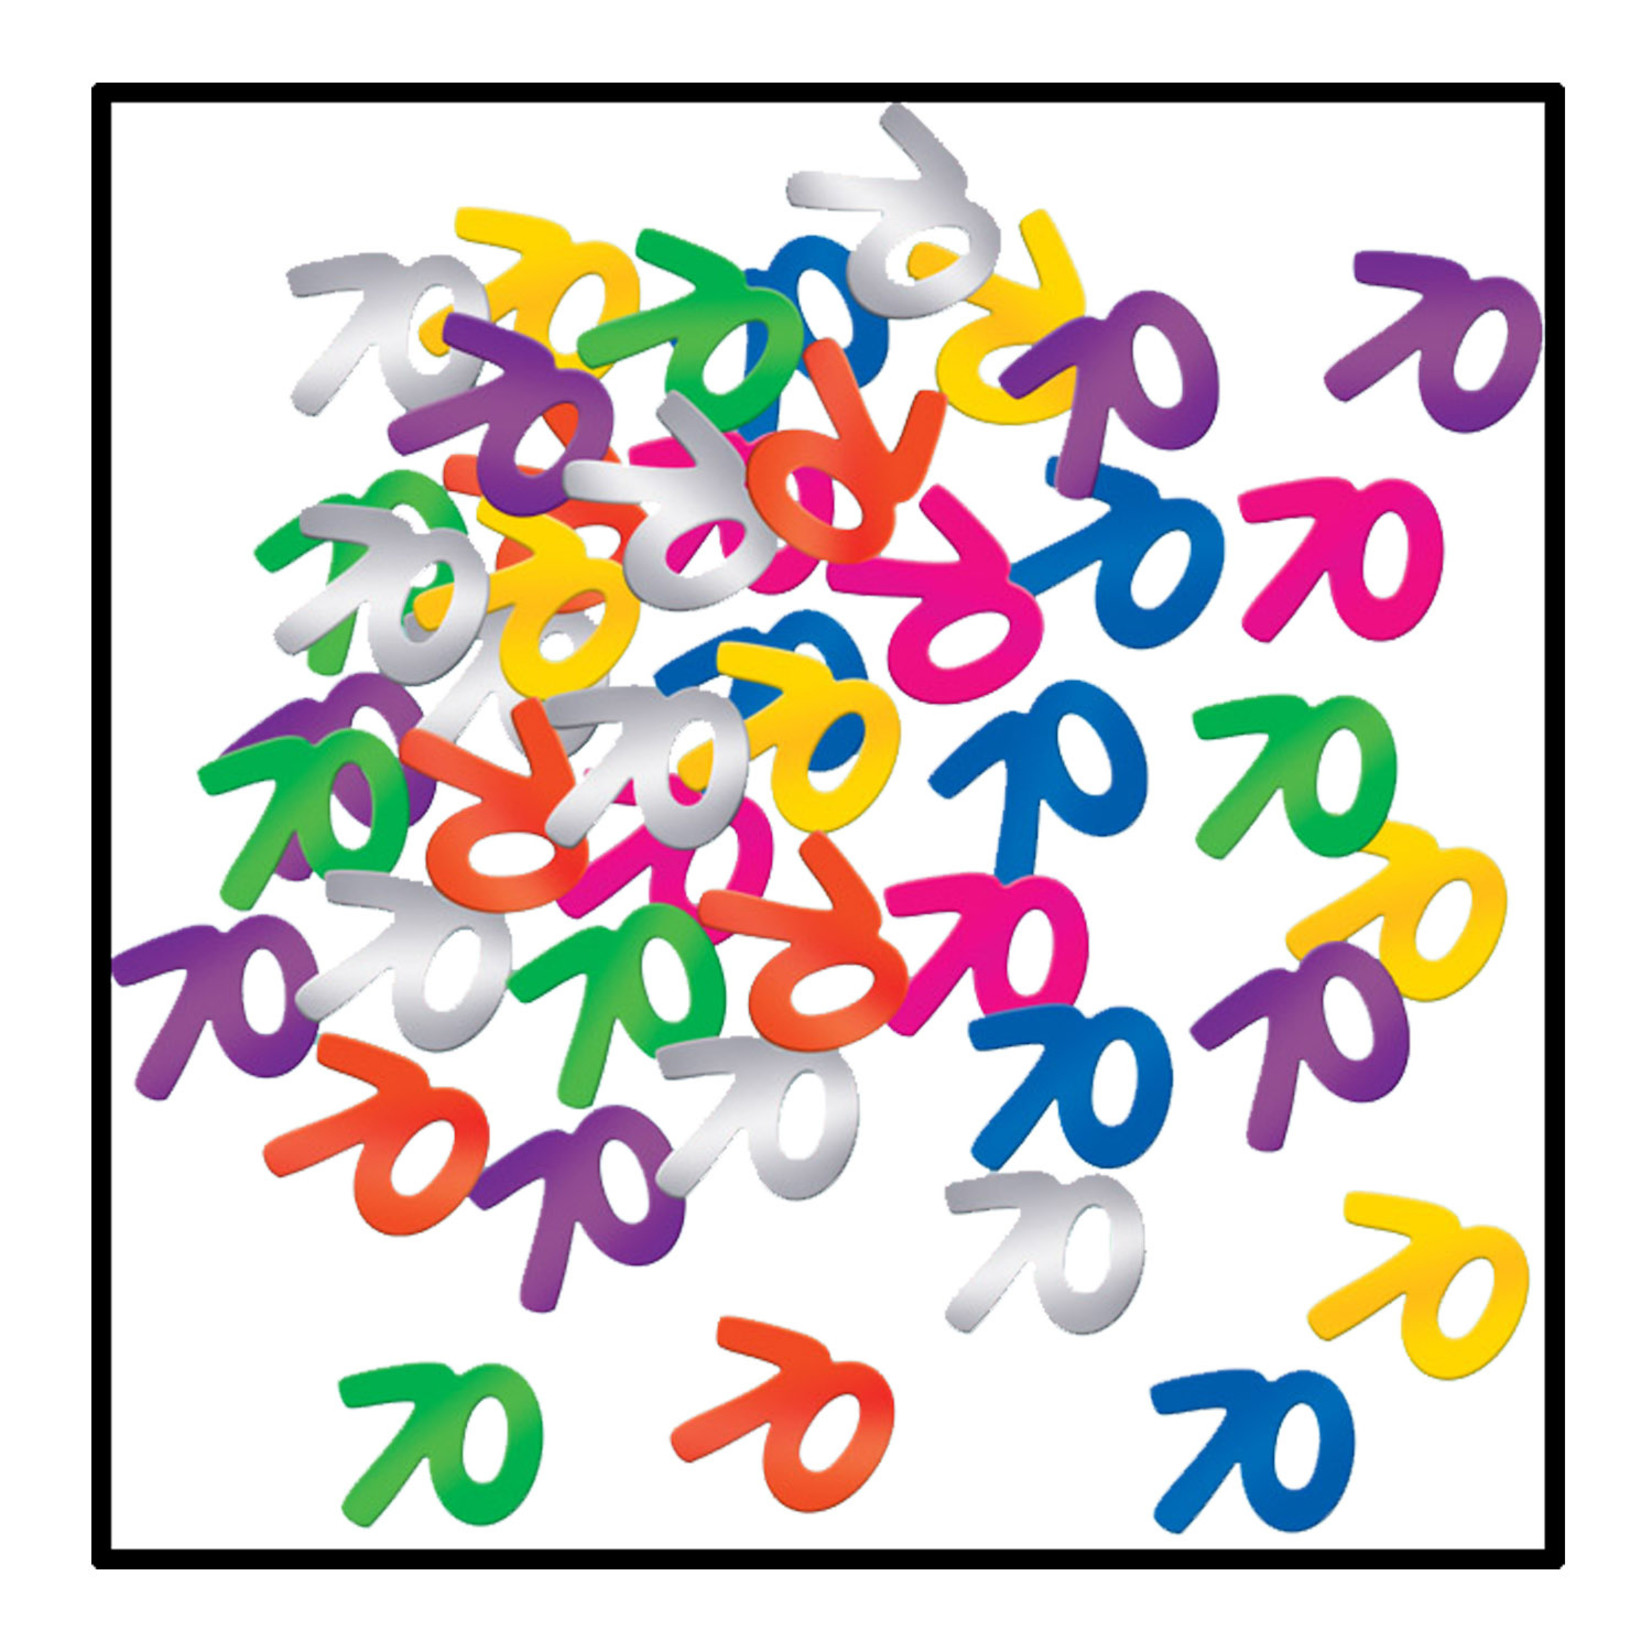 Beistle 70th Birthday Multi-Color Confetti - 0.5oz